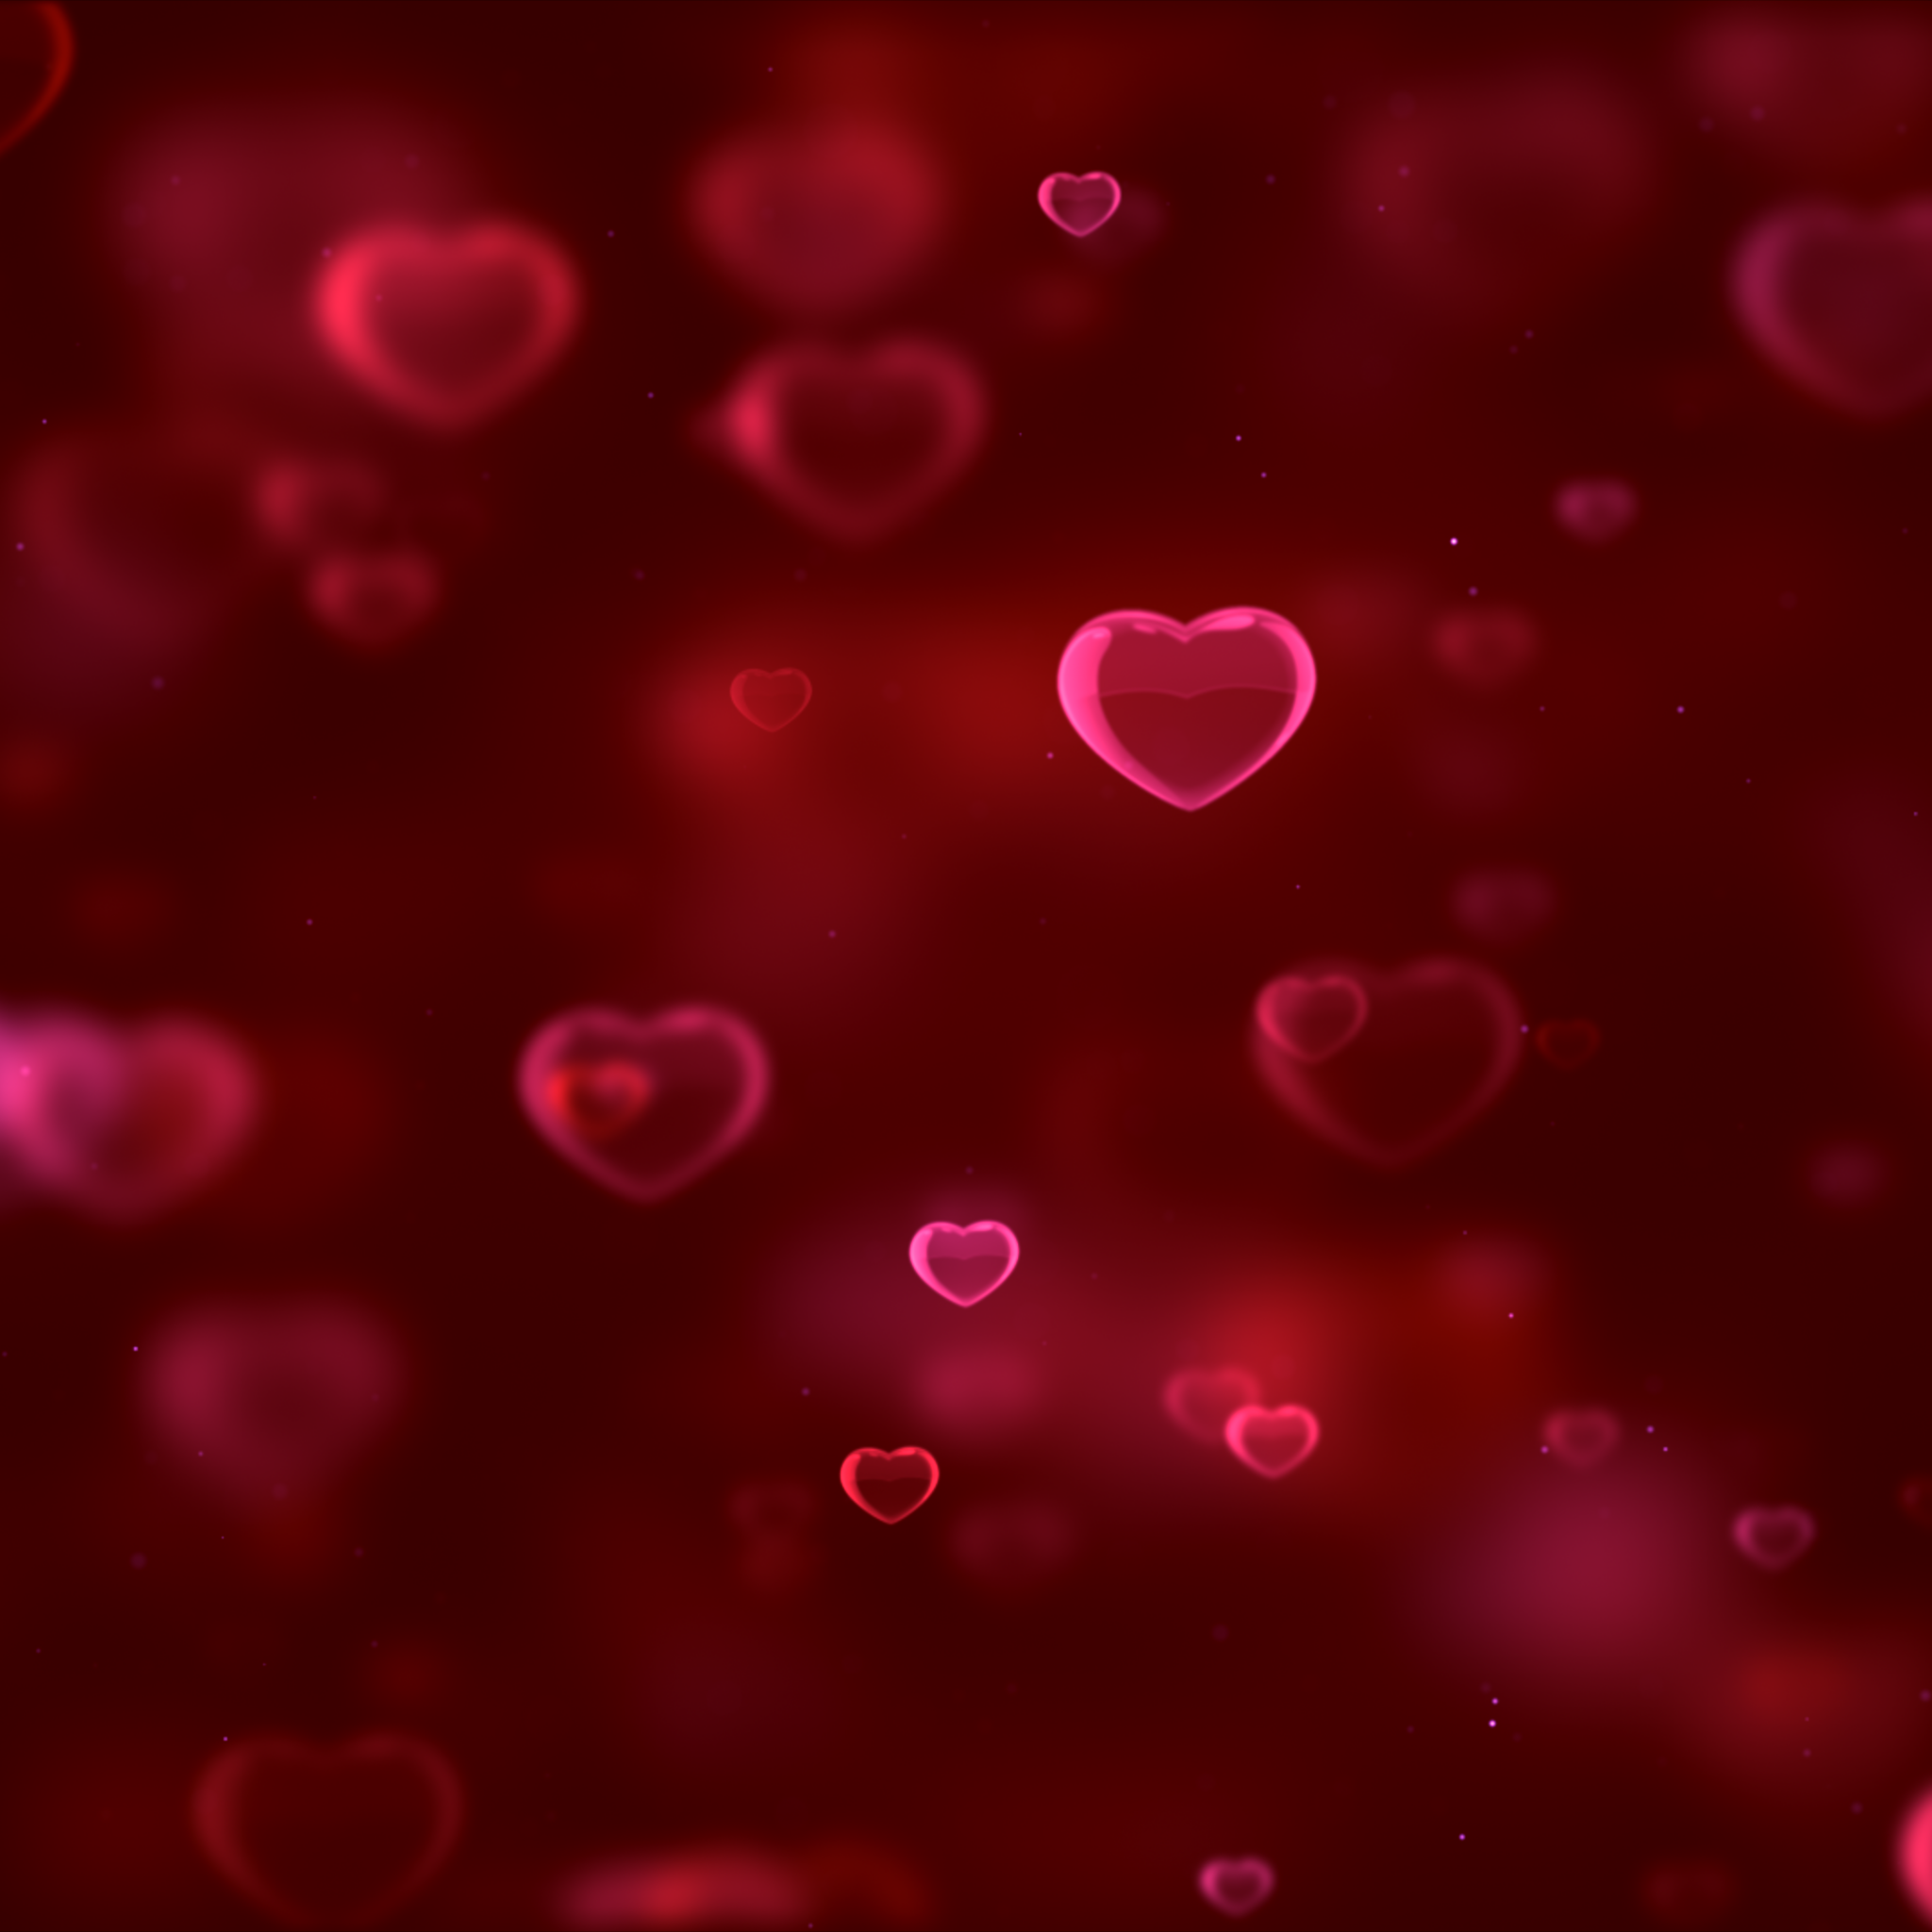 Hình nền trái tim đỏ là một lựa chọn tuyệt vời để tạo ra những bức ảnh đầy cảm xúc. Hãy xem những hình ảnh tuyệt đẹp với nền trái tim đỏ, sẽ khiến bạn cảm thấy đầy cảm hứng và yêu đời hơn bao giờ hết.